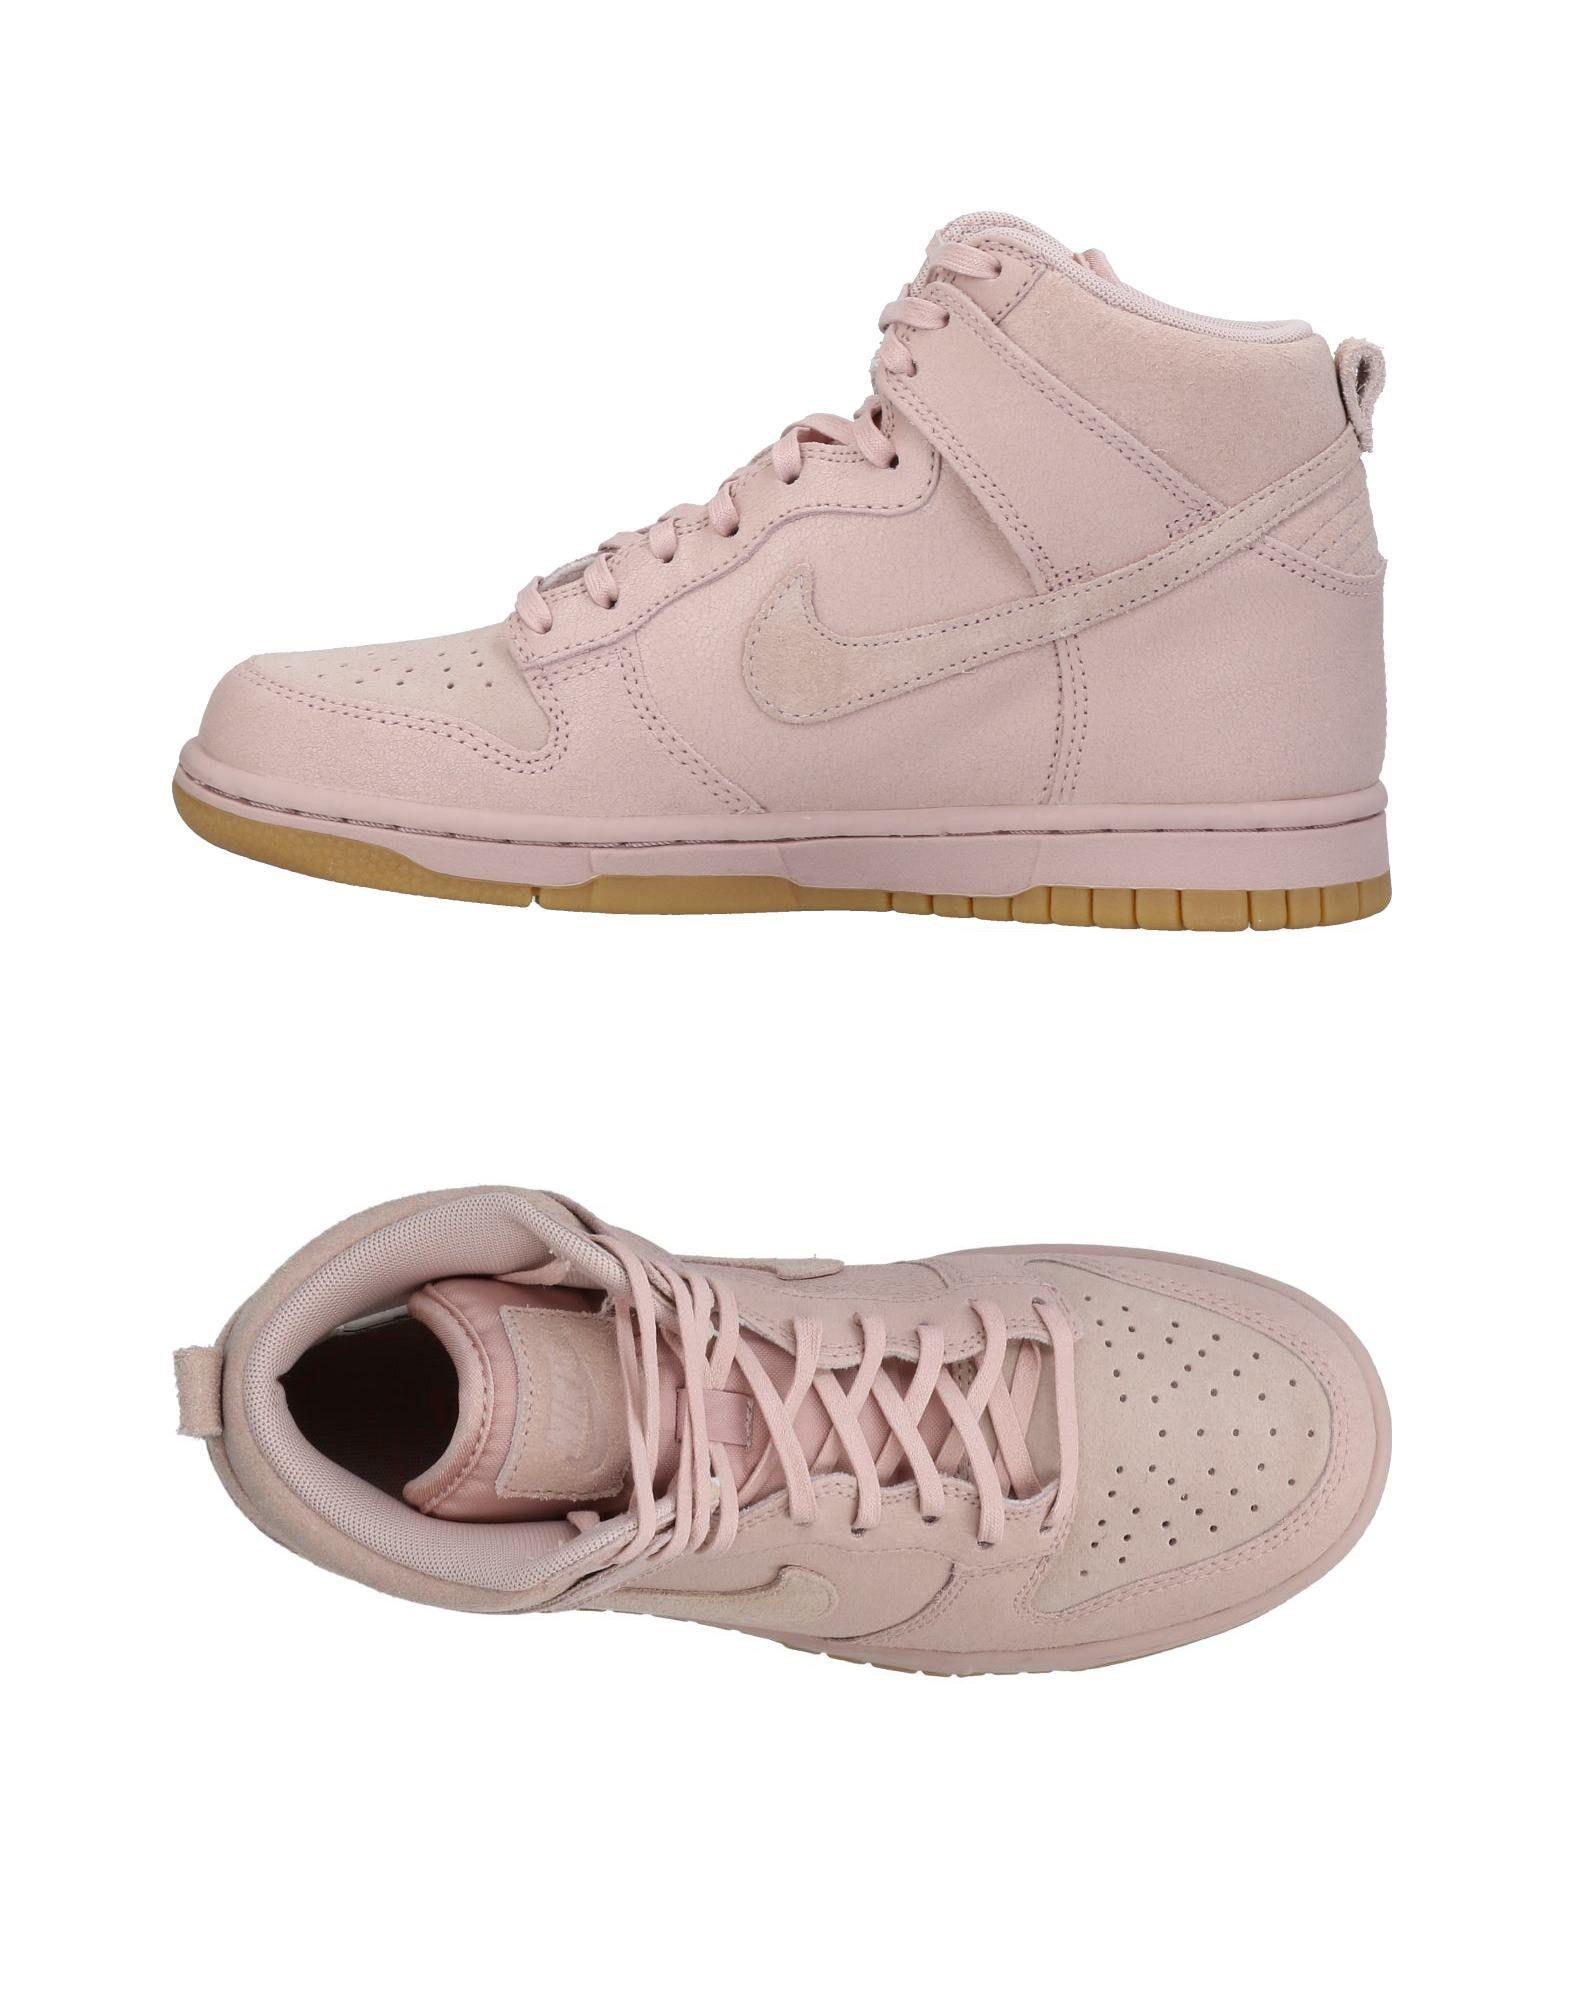 Nike Sneakers In Pastel Pink ModeSens